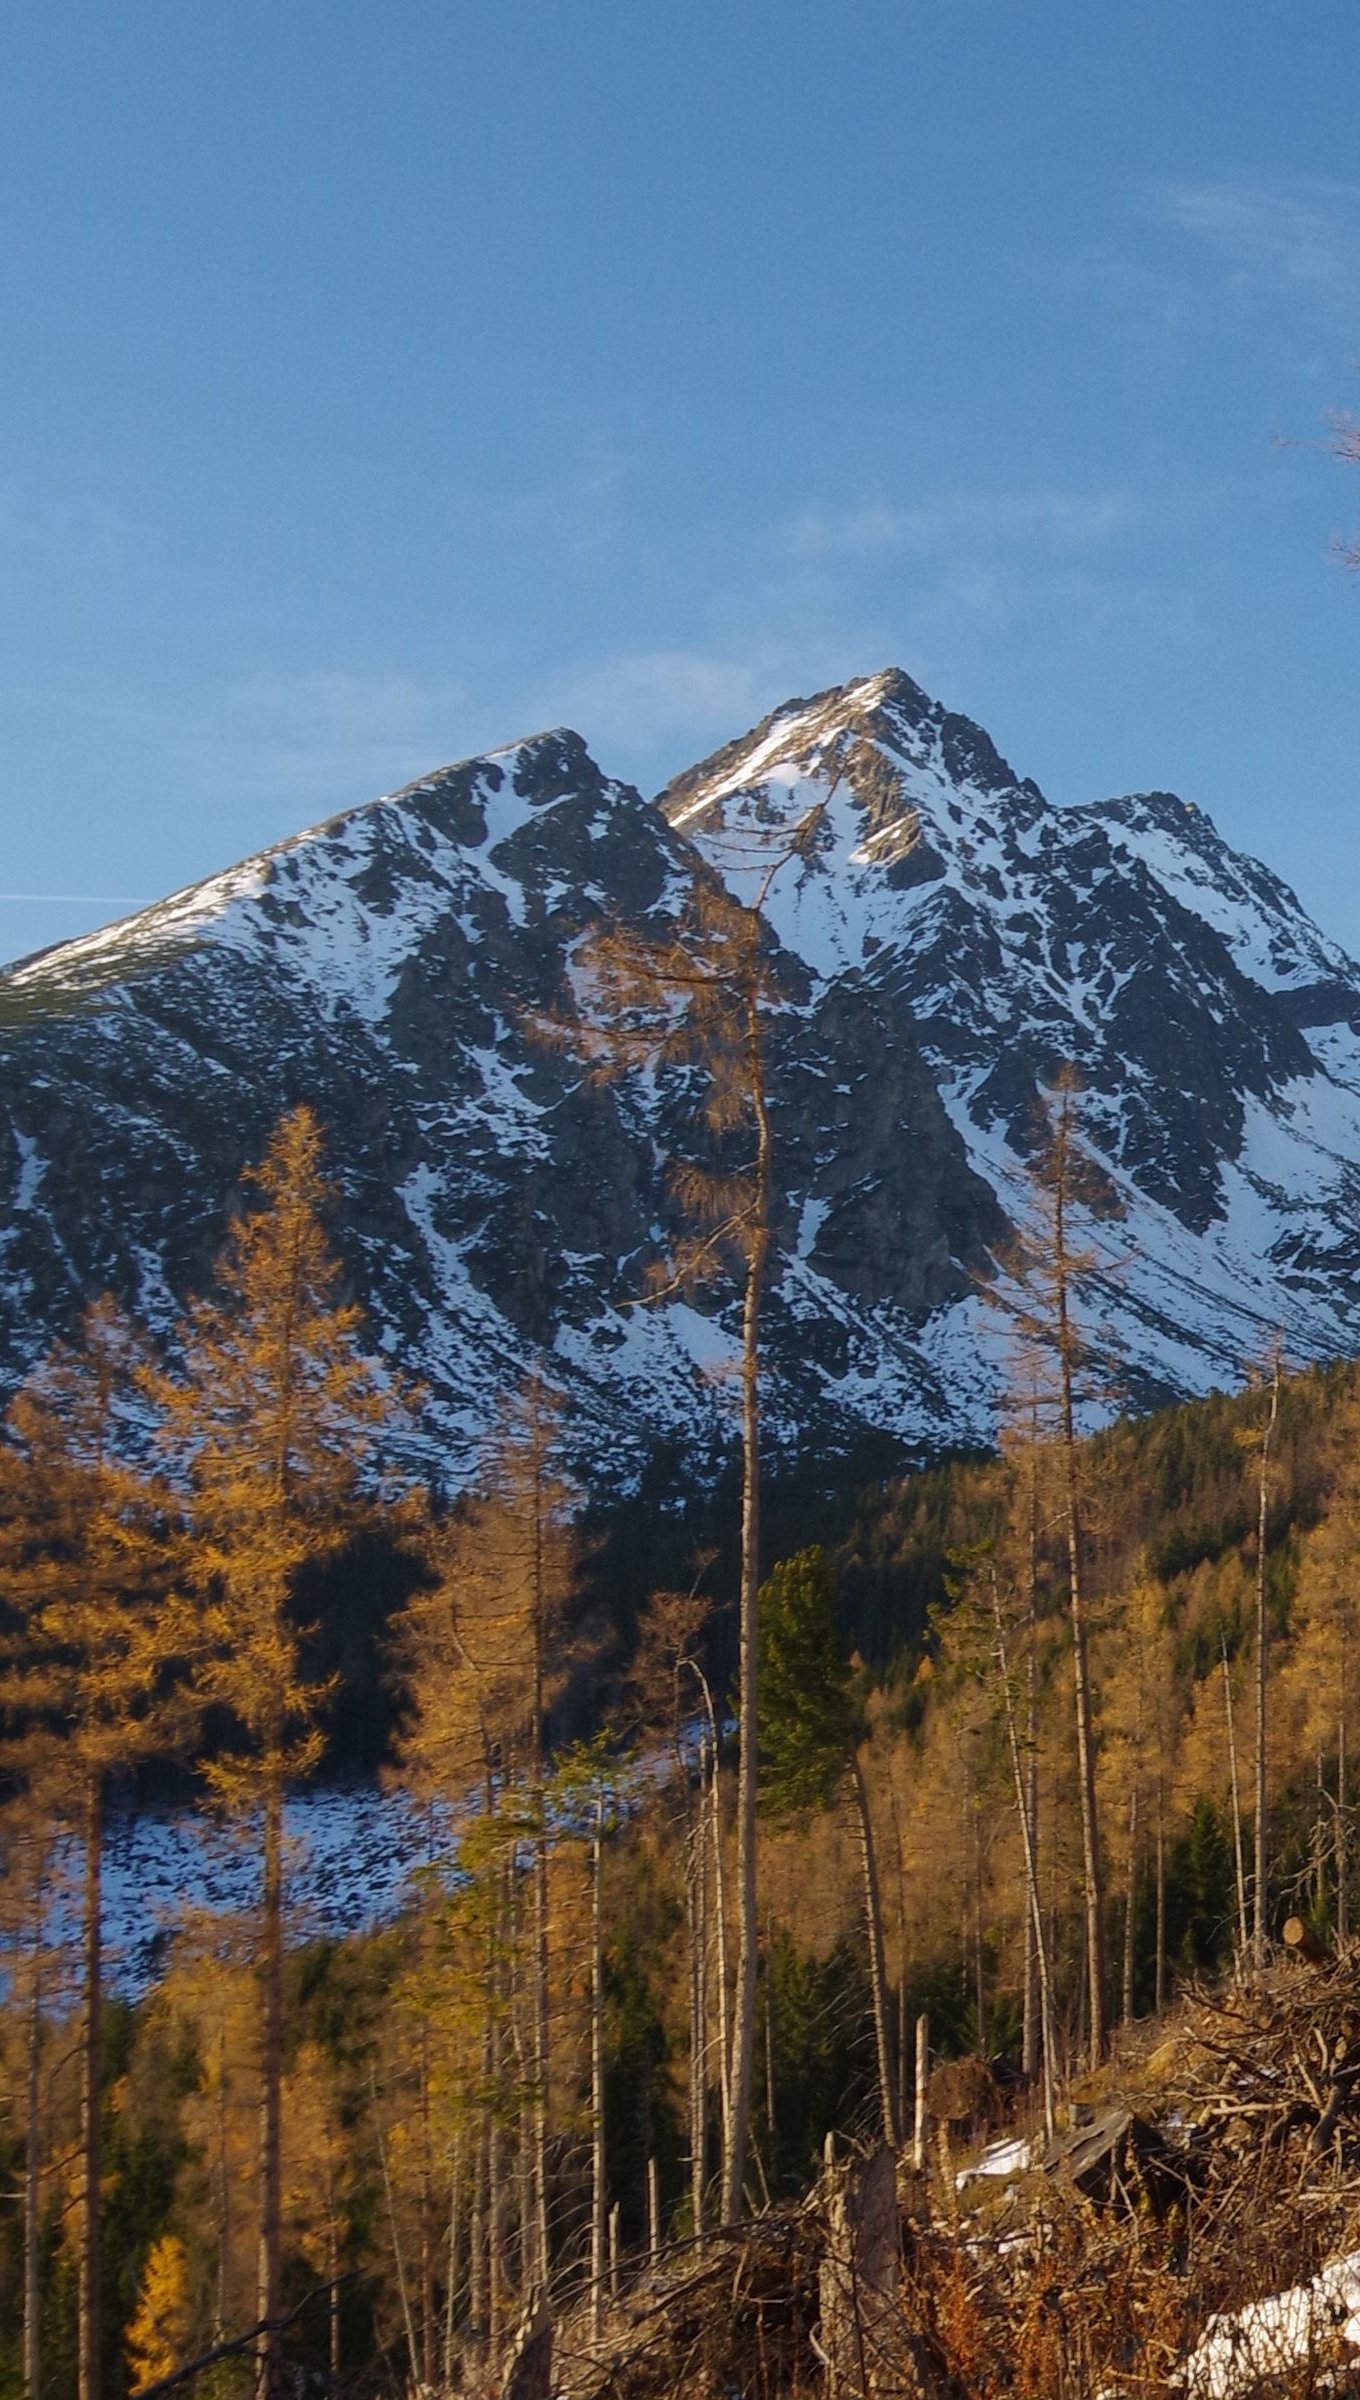 Fondos de pantalla Montañas con nieve y árboles Vertical